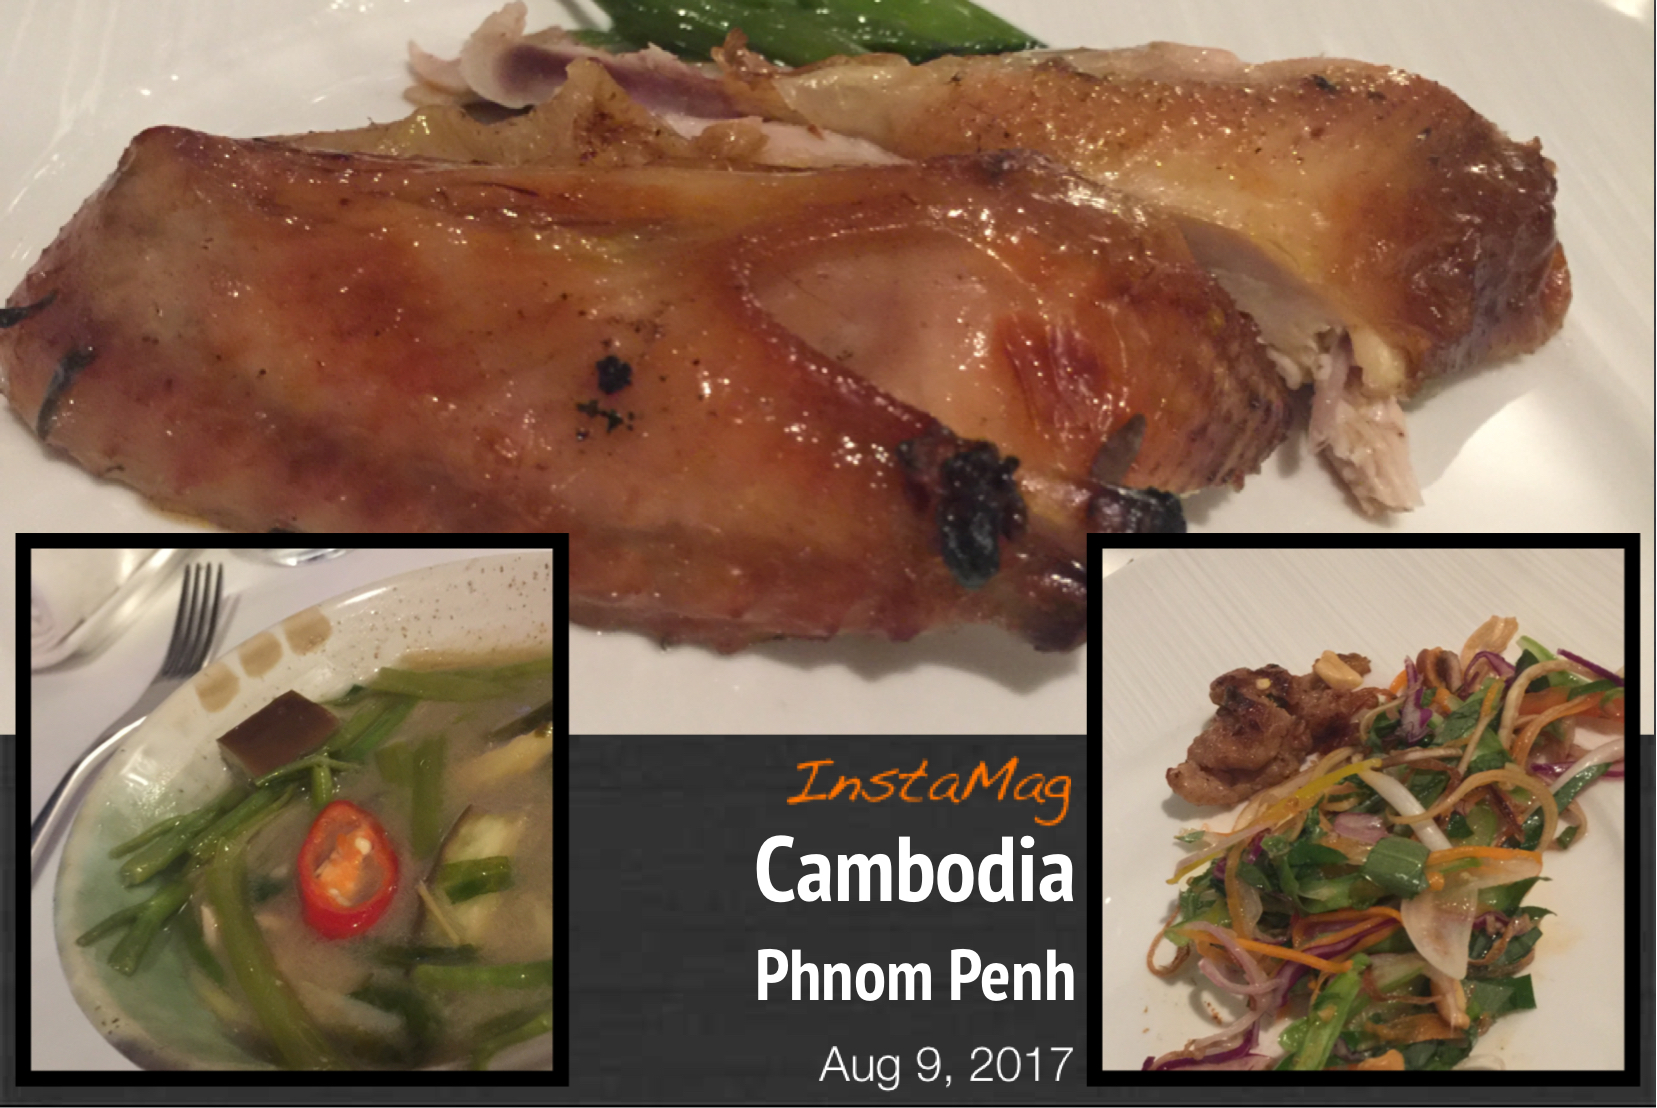 勞工及福利局局長羅致光博士在柬埔寨訪問期間，品嚐有名的柬埔寨菜，包括圖中的酸湯、芭蕉花做的沙律和燒鷄。